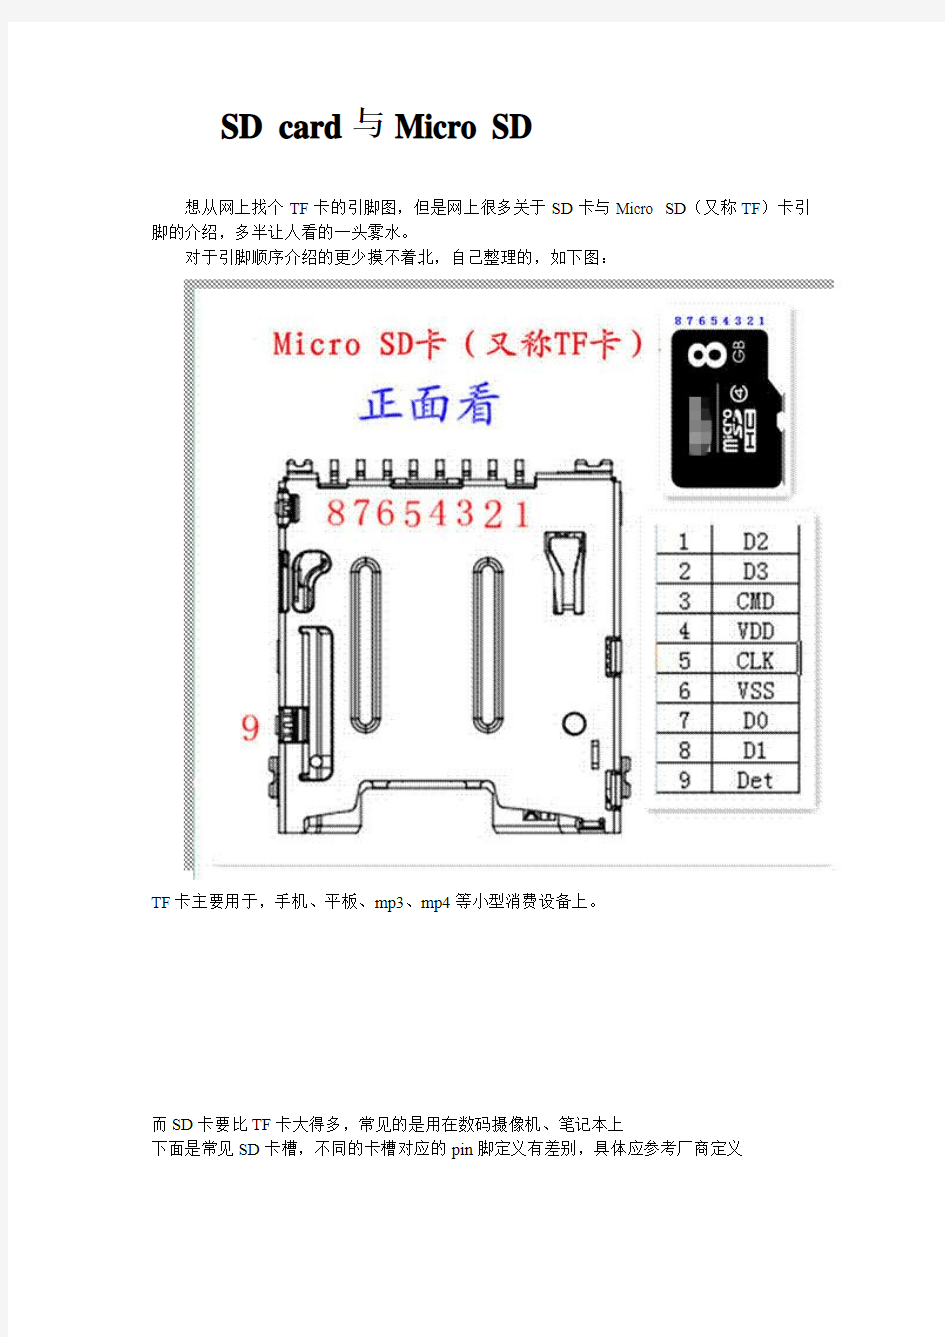 SD卡与Micro SD(TF)卡引脚图